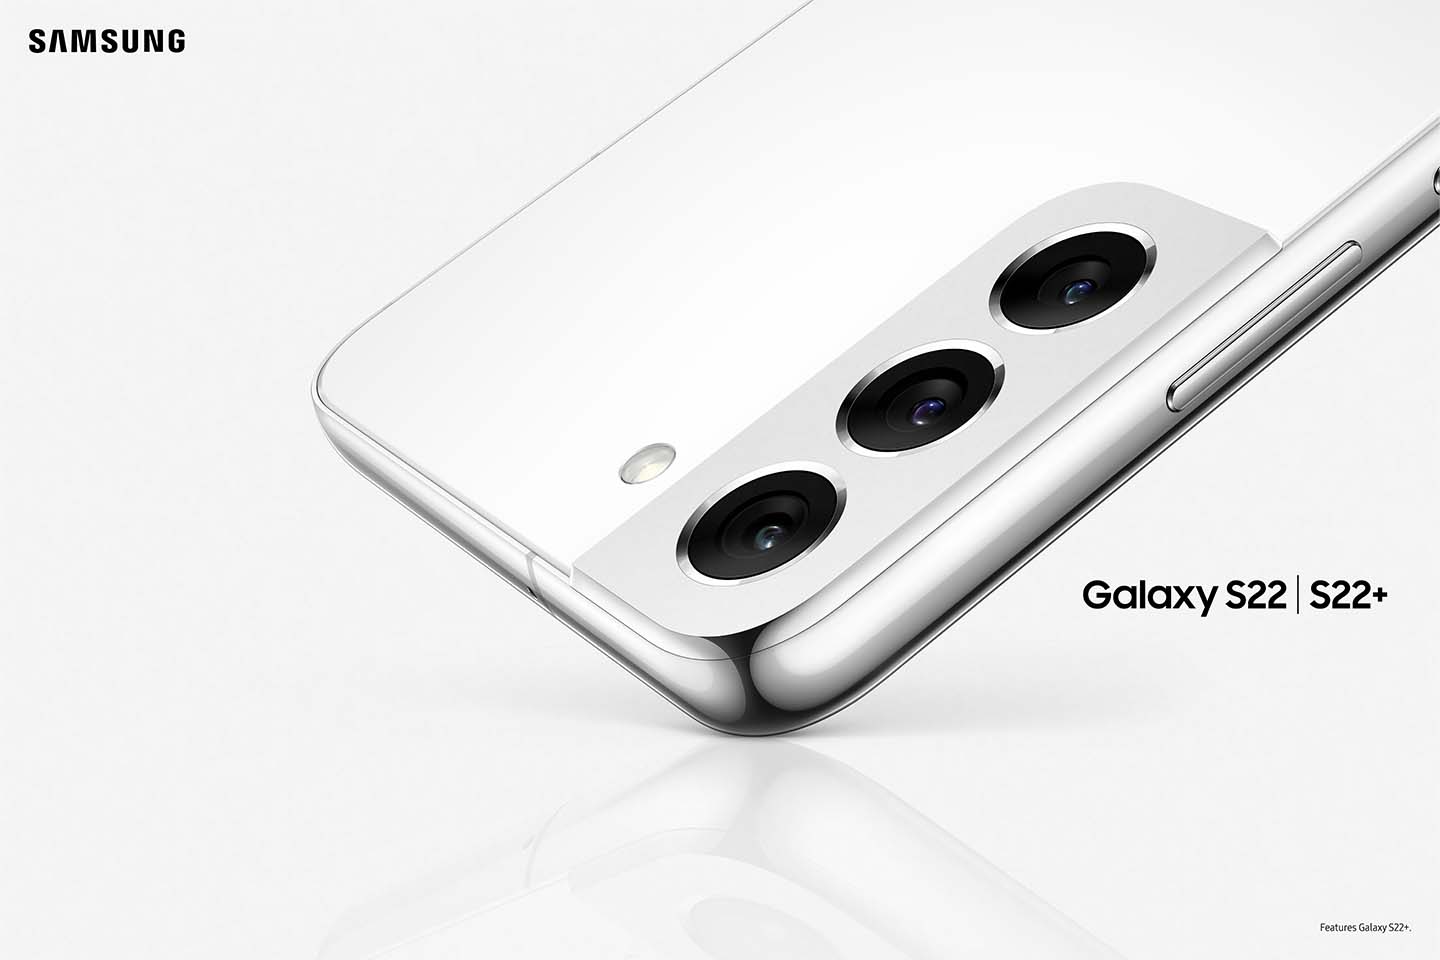 Samsung Galaxy S22 y S22+ ofrecen una experiencia de cámara revolucionaria